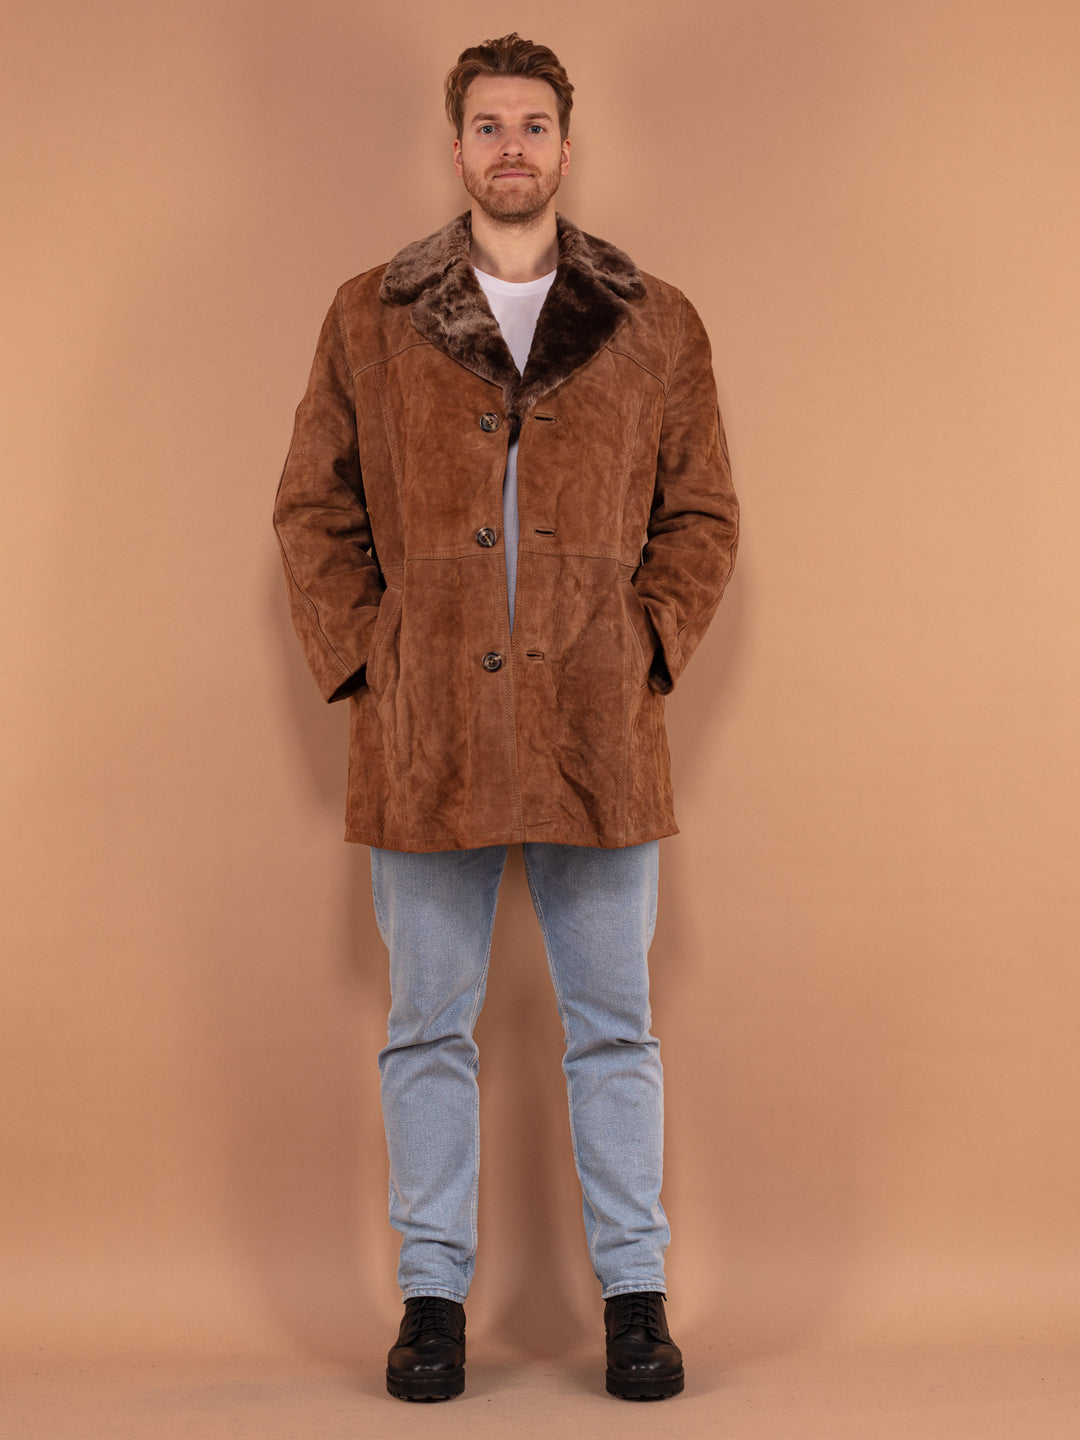 Men Suede Coat, Size Medium L, 70's Vintage Coat, Sherpa Western Coat, Sheepskin Style Coat, Retro Coat For Men, Suede Jacket, BetaMenswear